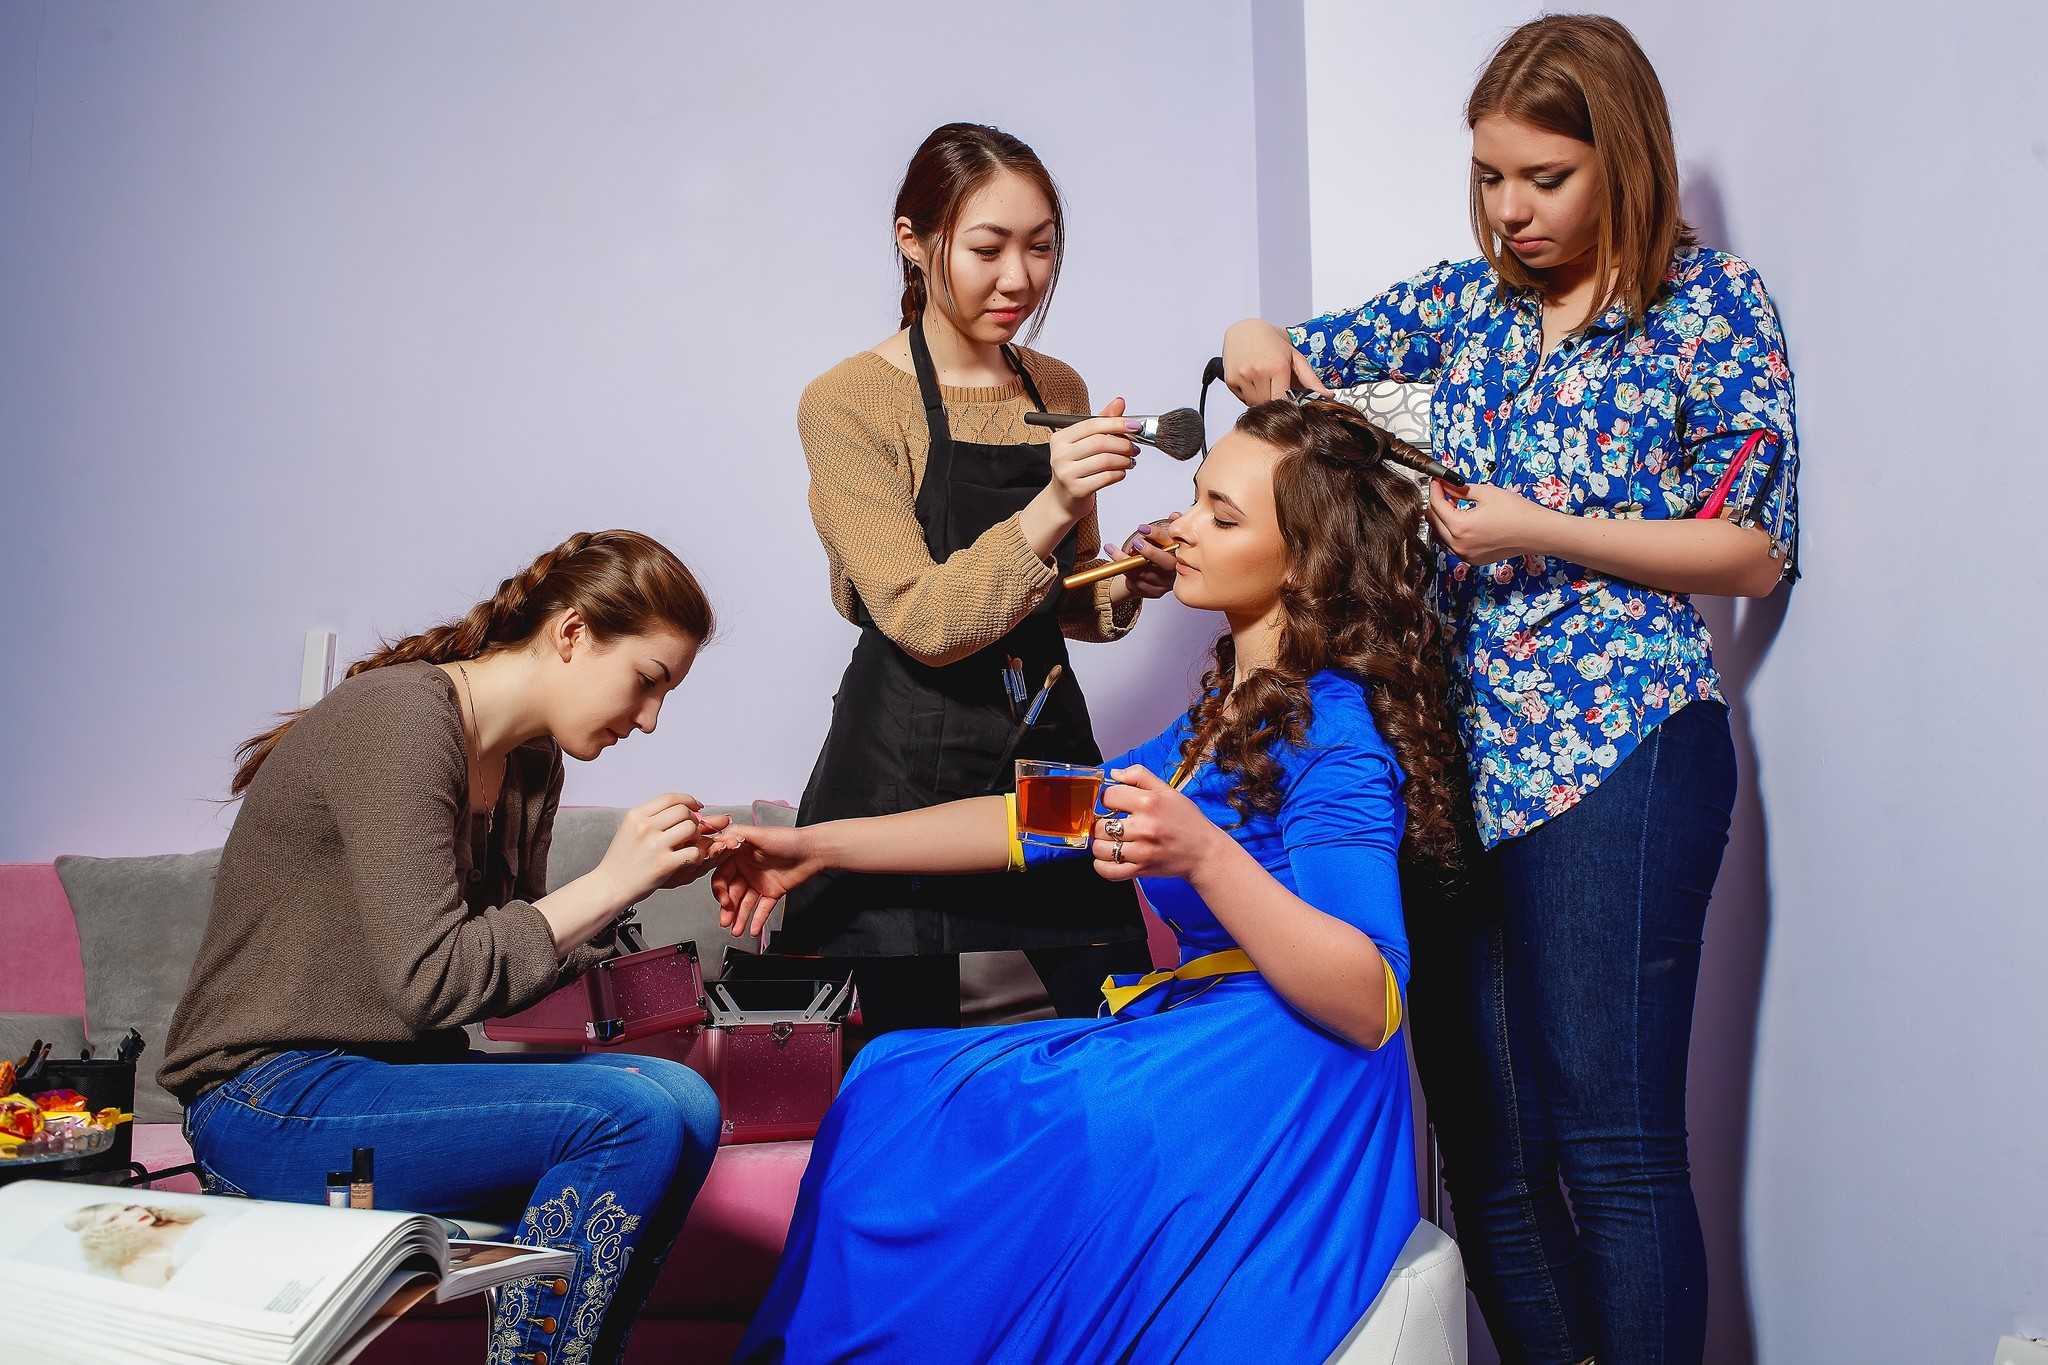 10 новинок в салонах красоты, быстро набирающих популярность – процедуры для лица, тела и волос